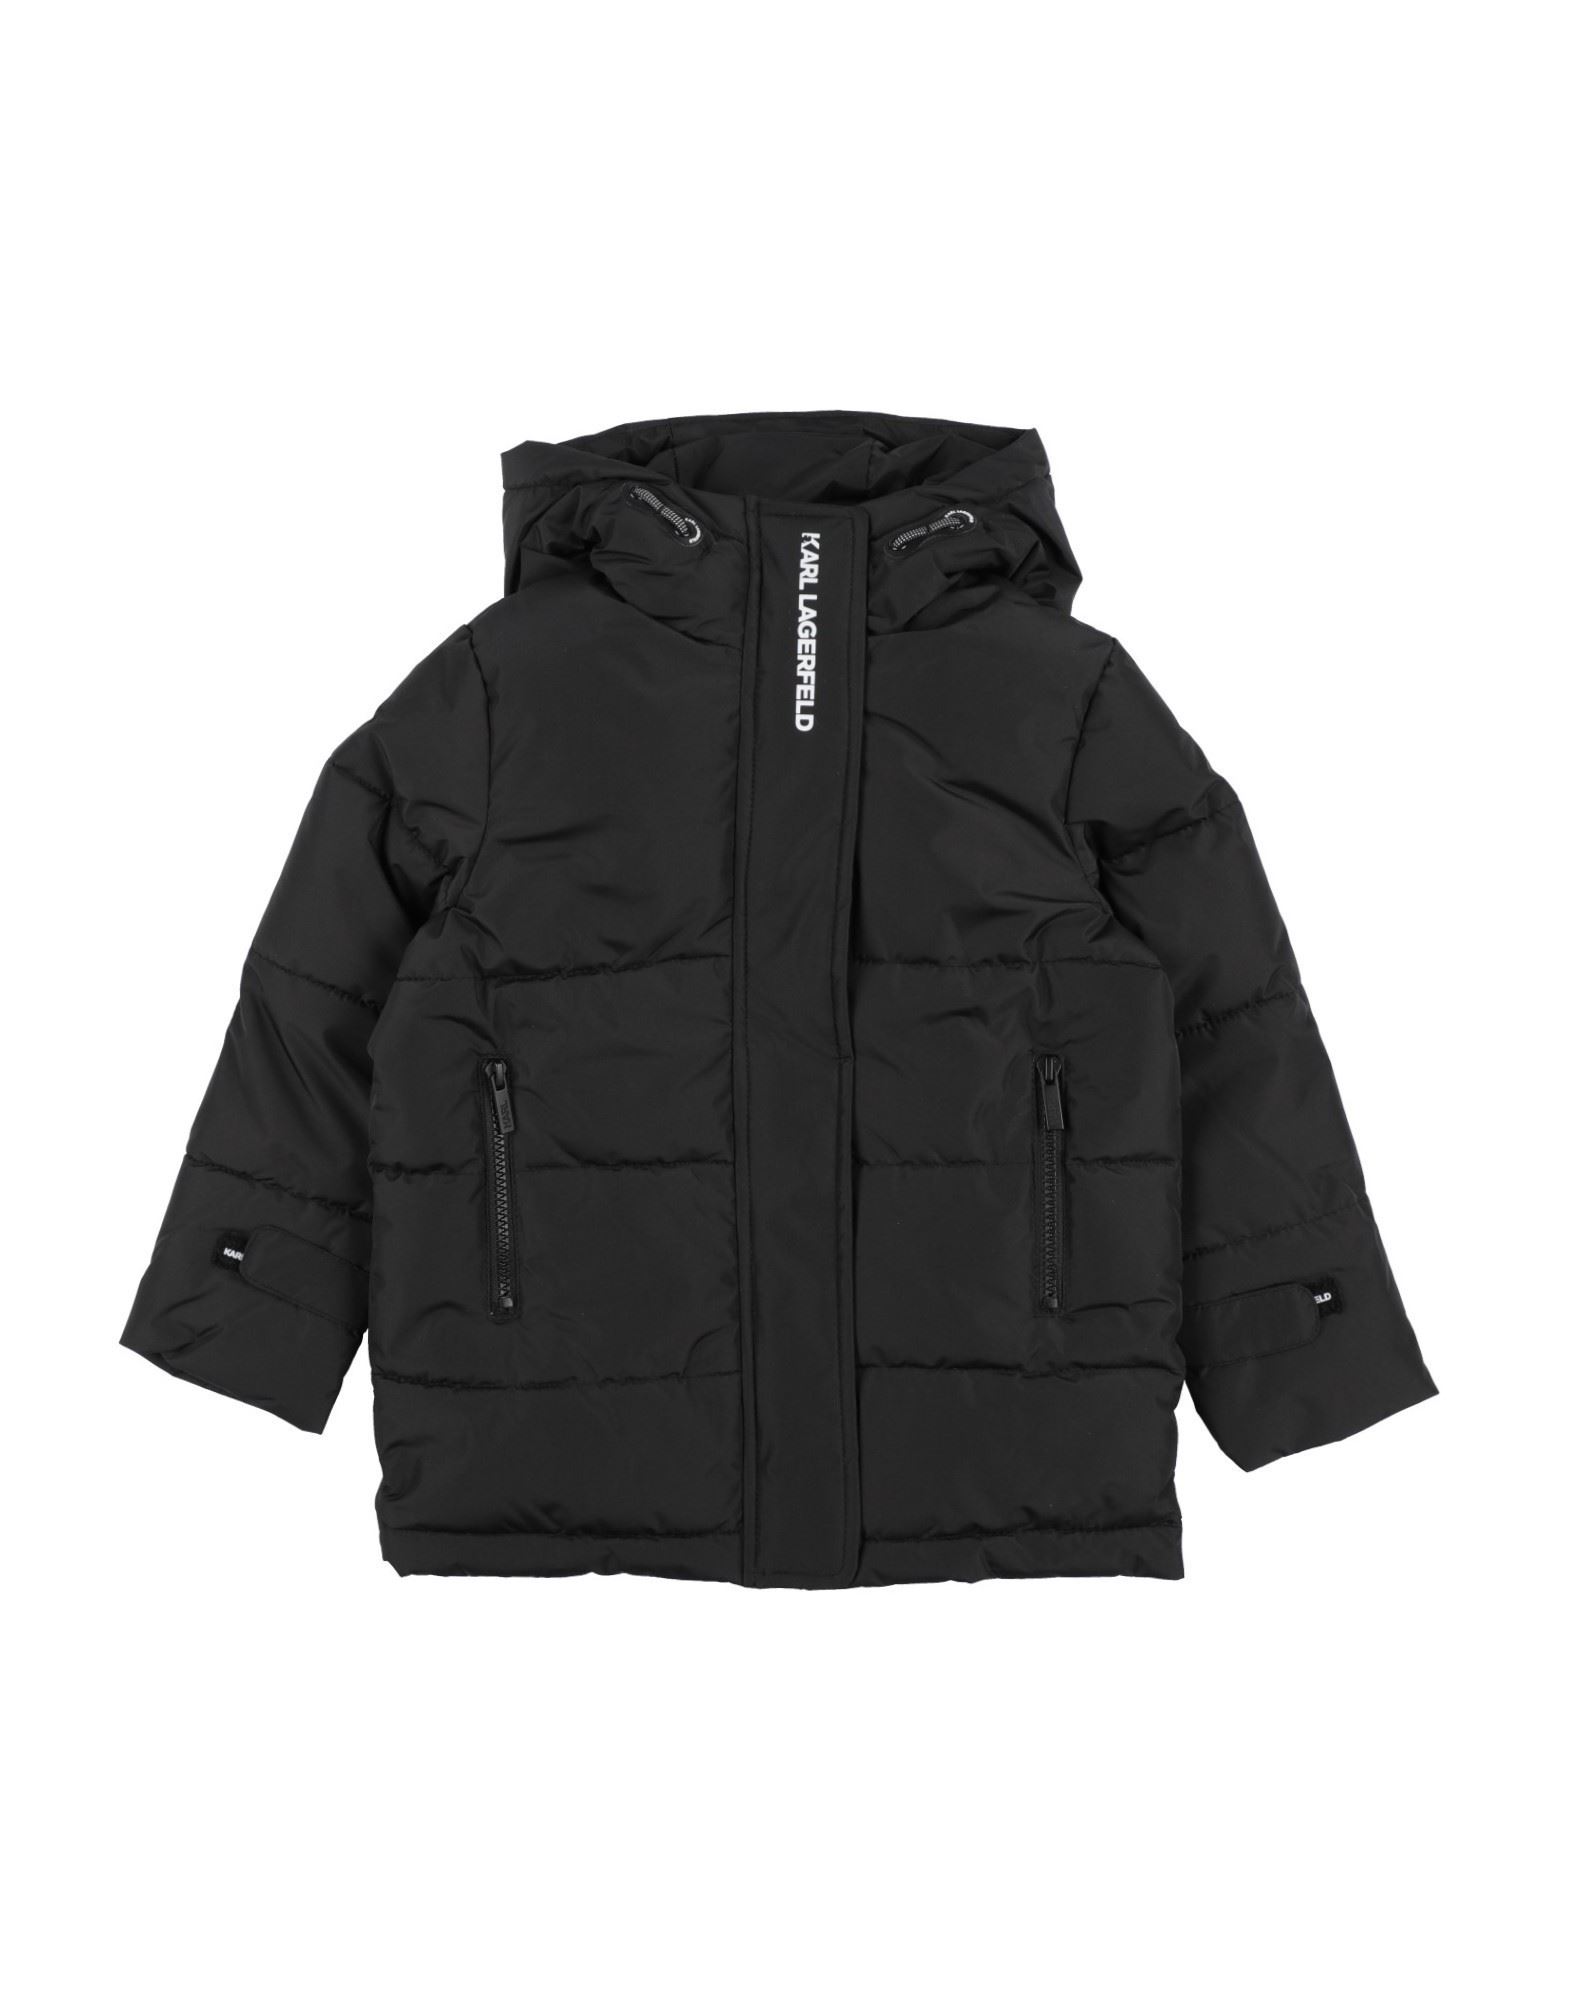 Karl Lagerfeld Kids' Jackets In Black